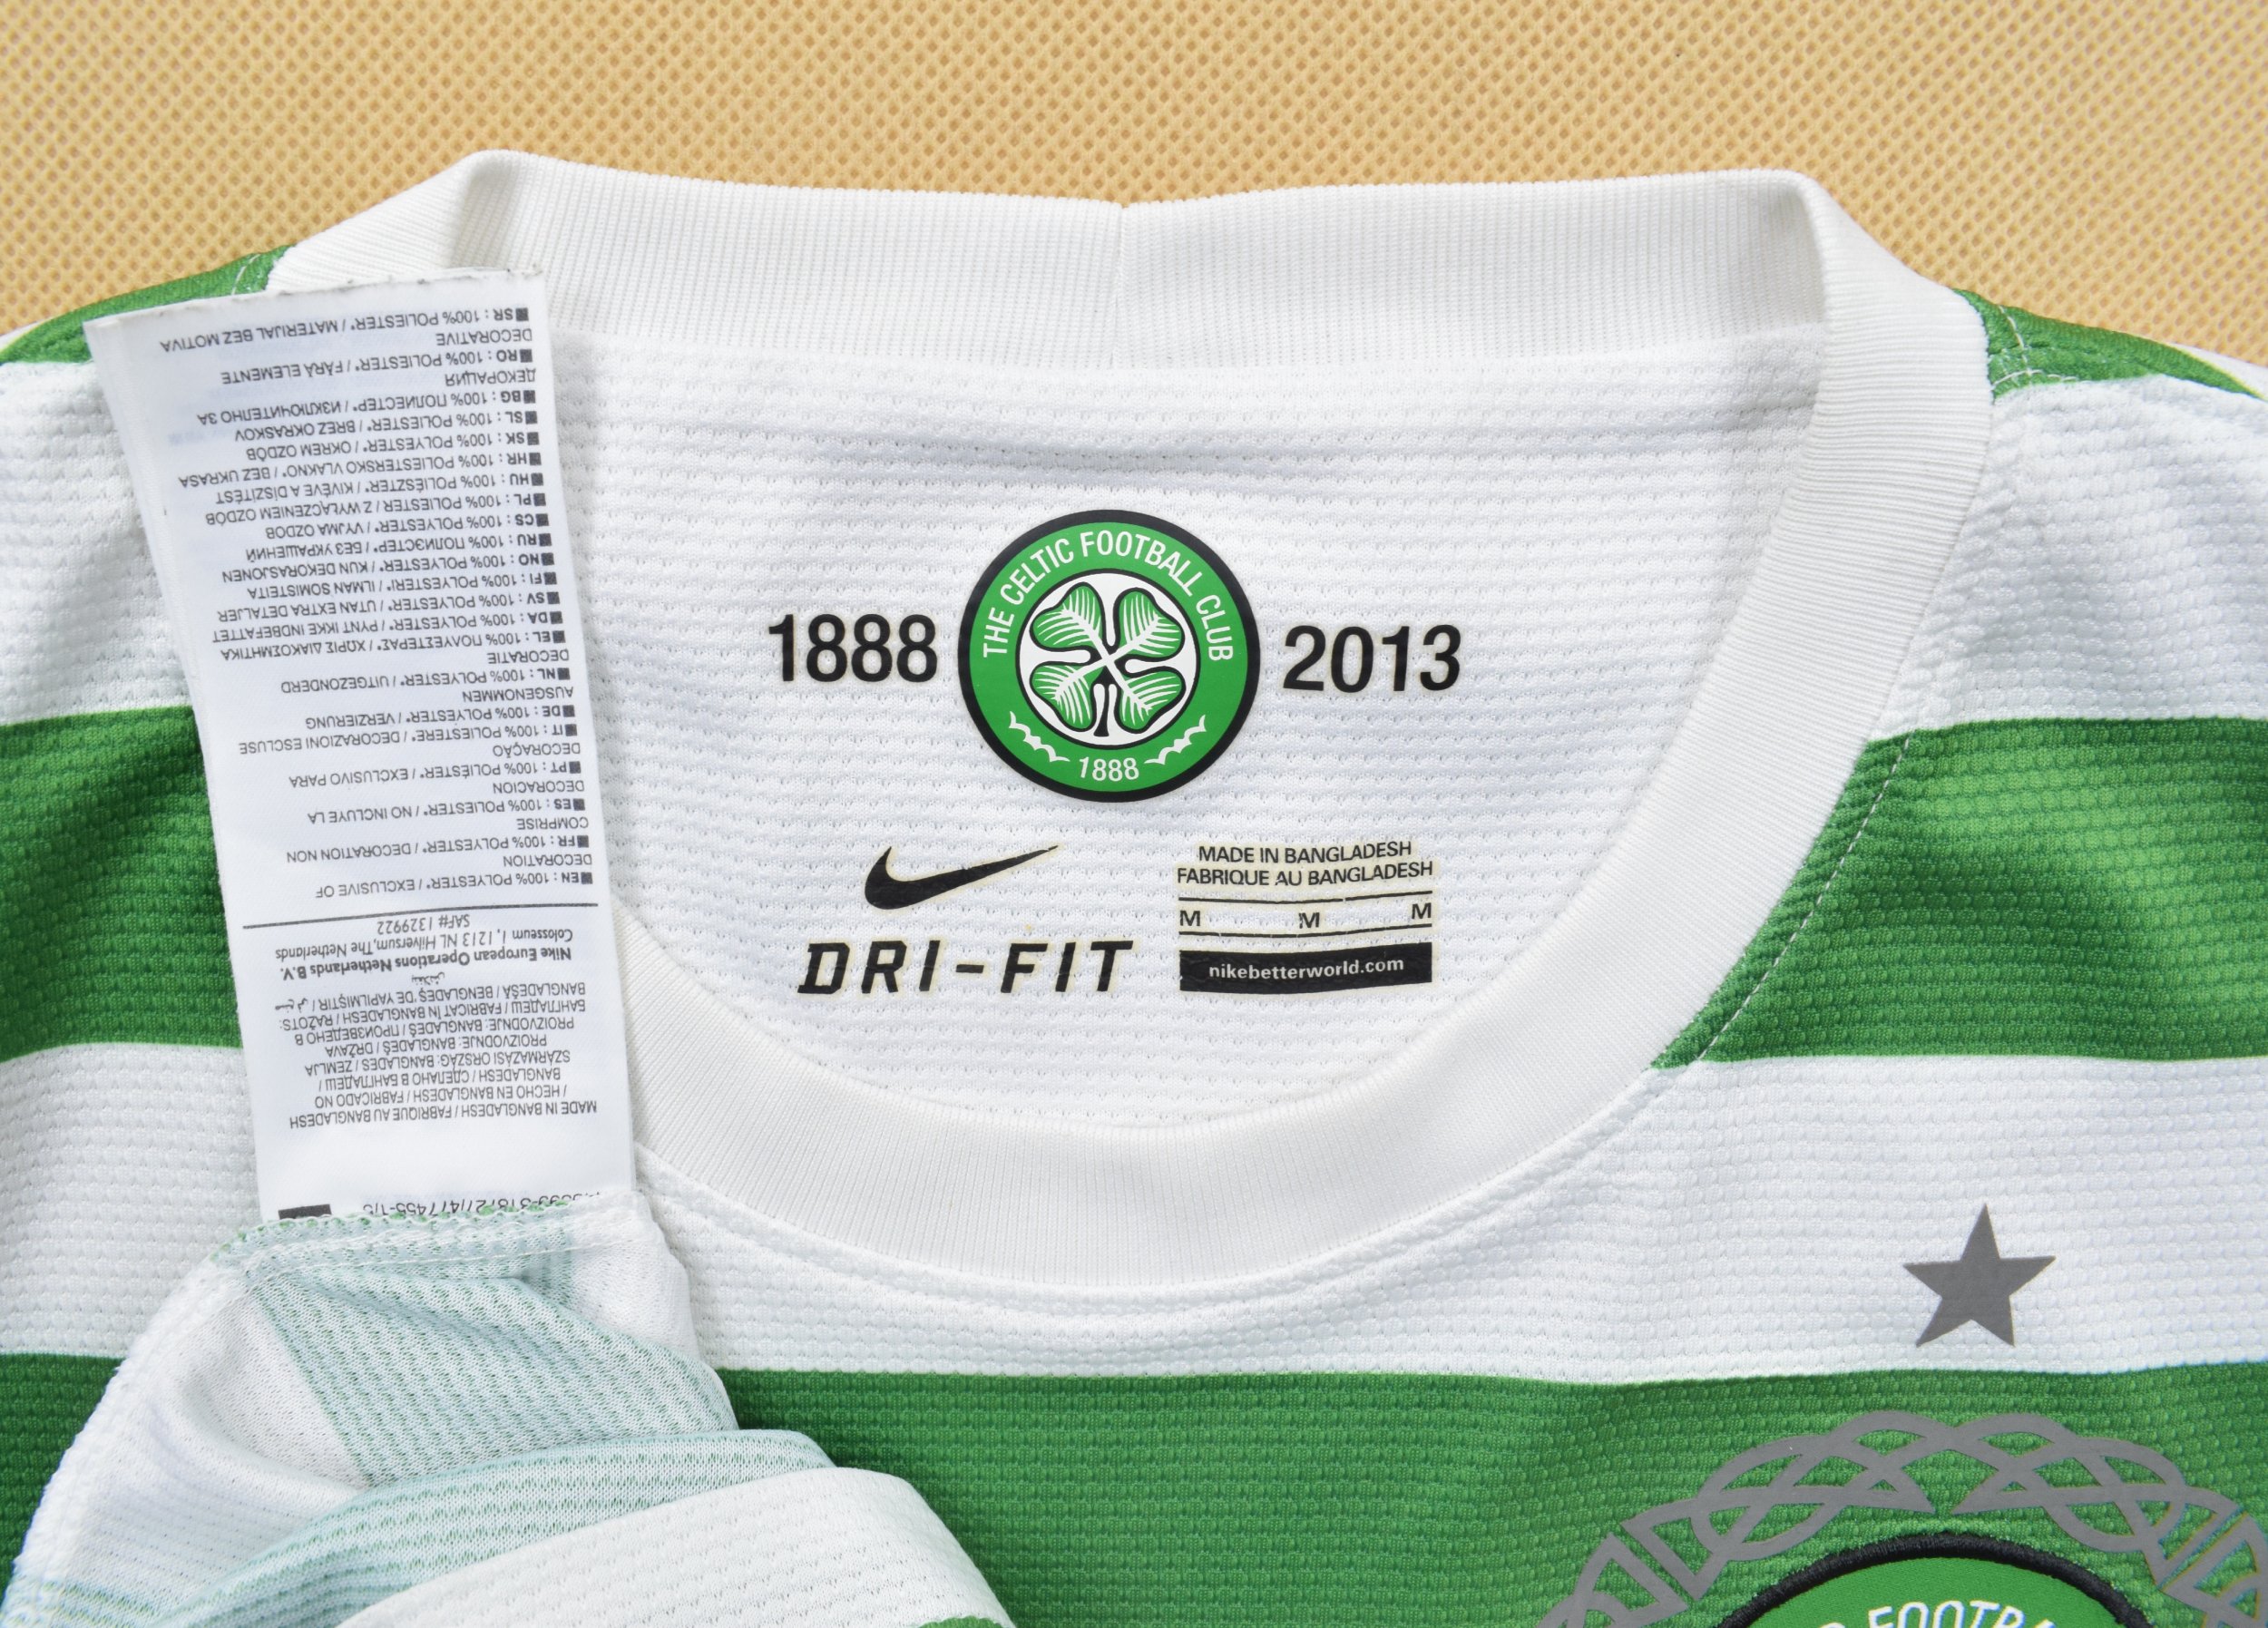 Celtic 2012-13 Kits